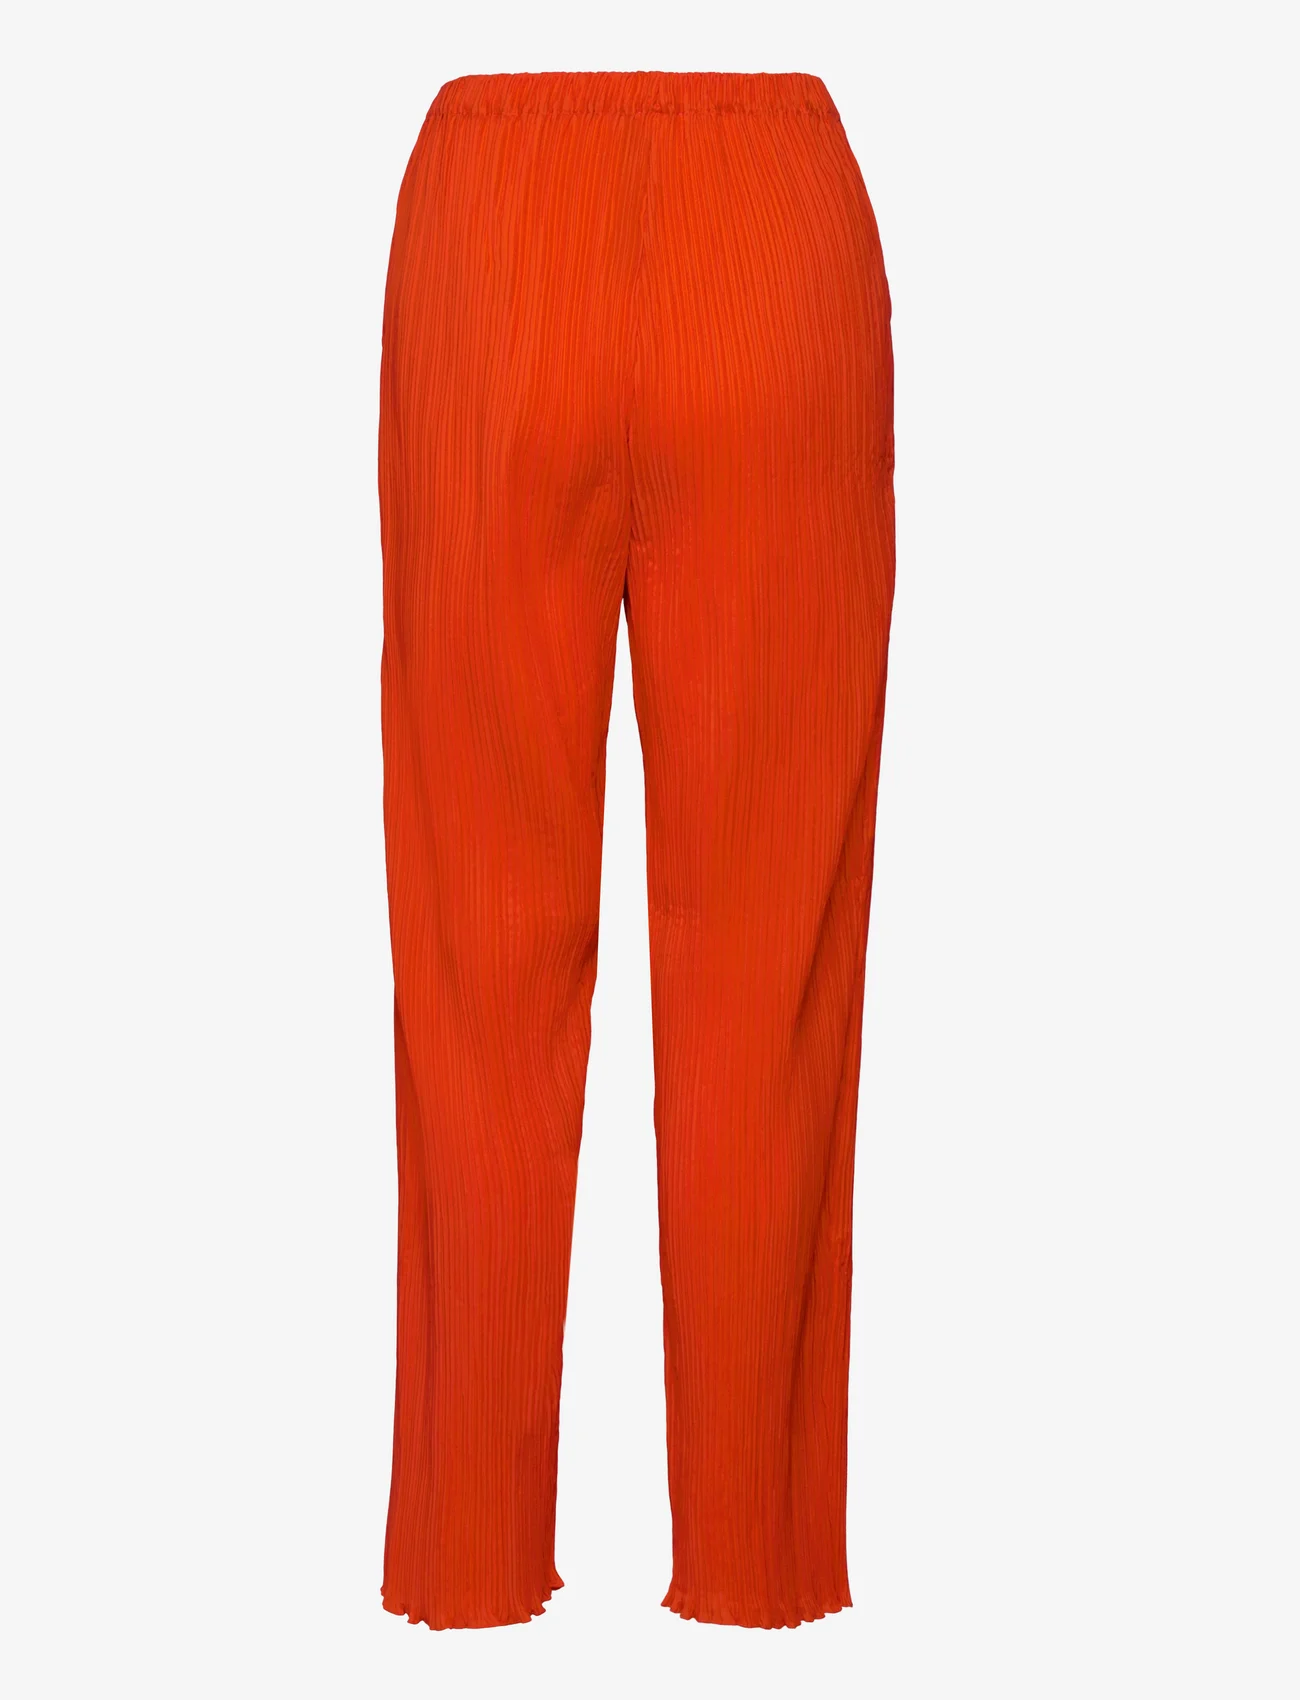 Samsøe Samsøe - Fridah trousers 14643 - bukser med lige ben - orange.com - 1